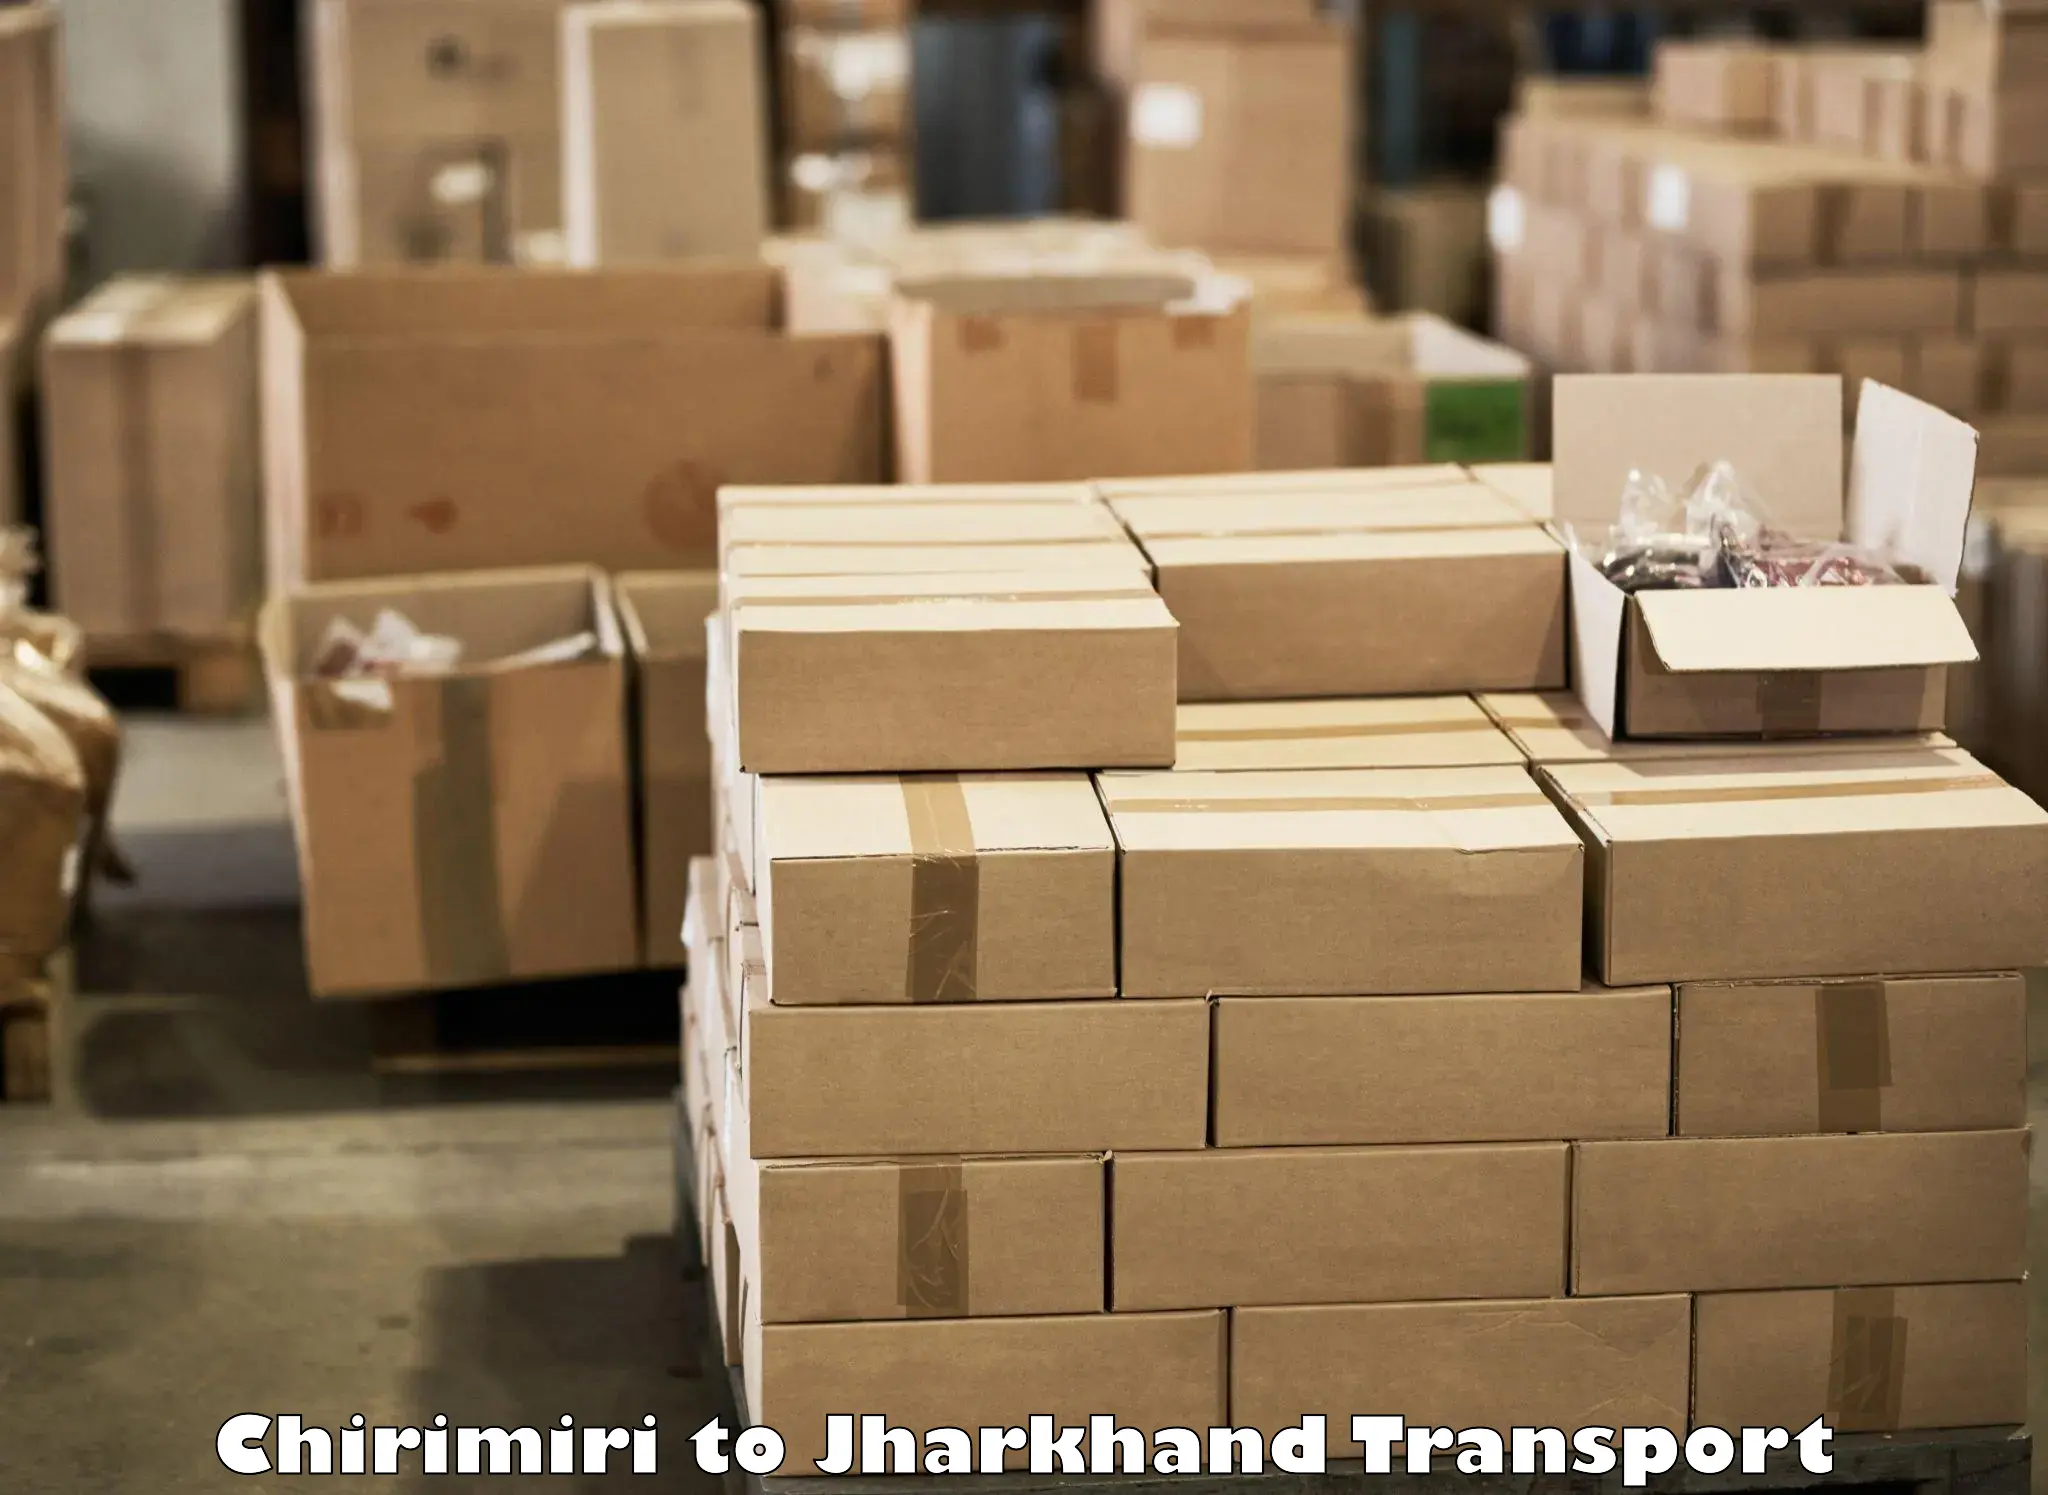 Furniture transport service Chirimiri to Dhalbhumgarh